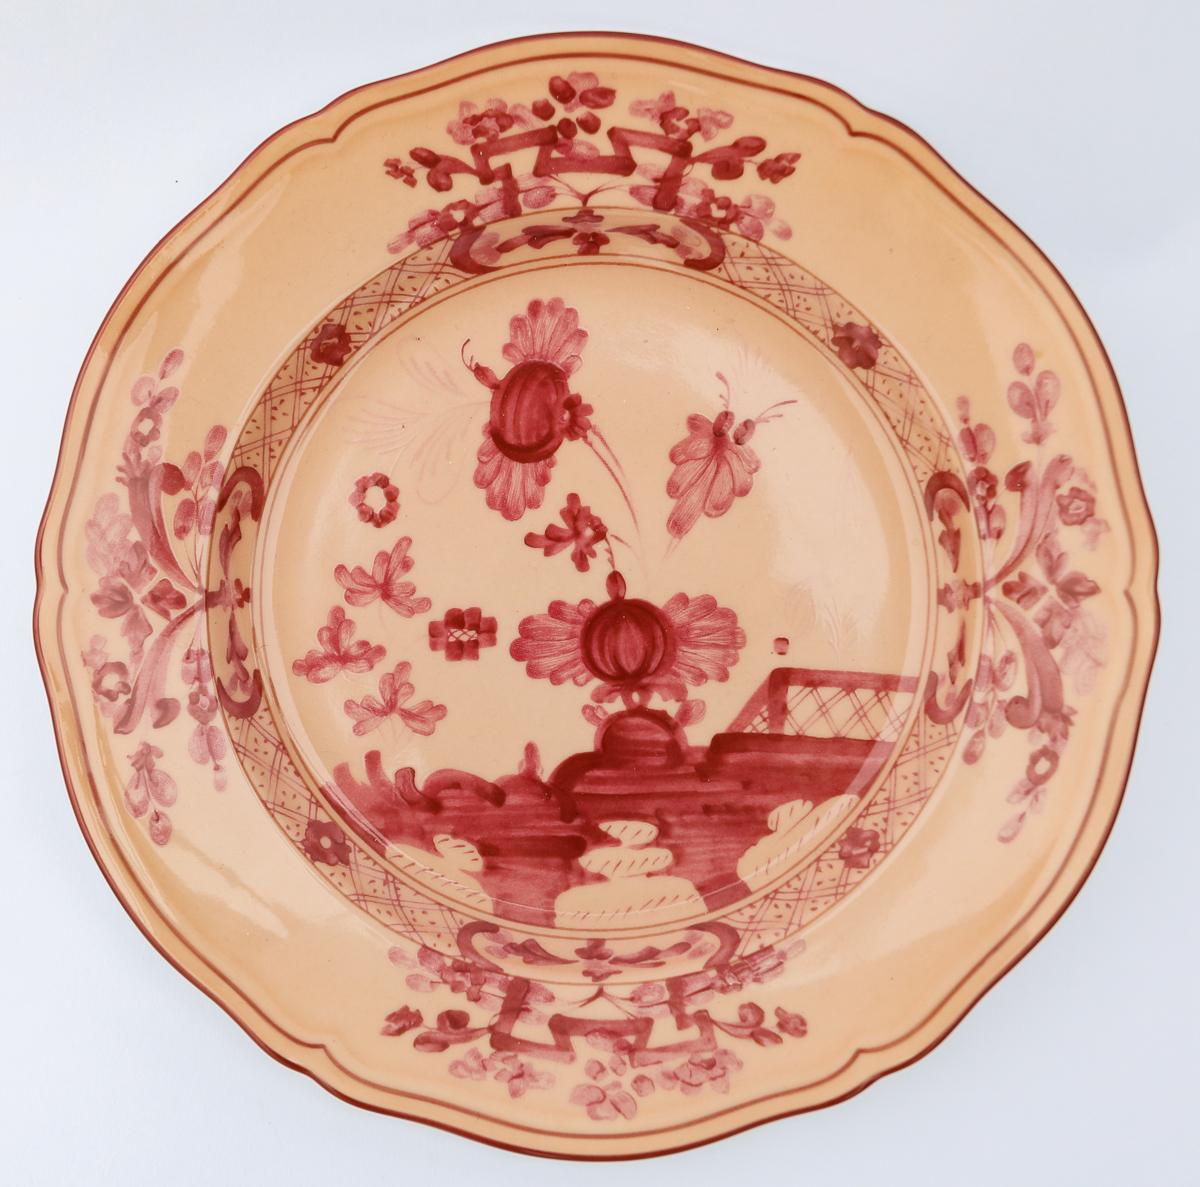 Richard Ginori Oriente Italiano vermiglio peach dessert plate in the Antico Doccia shape 21cm in diameter.


